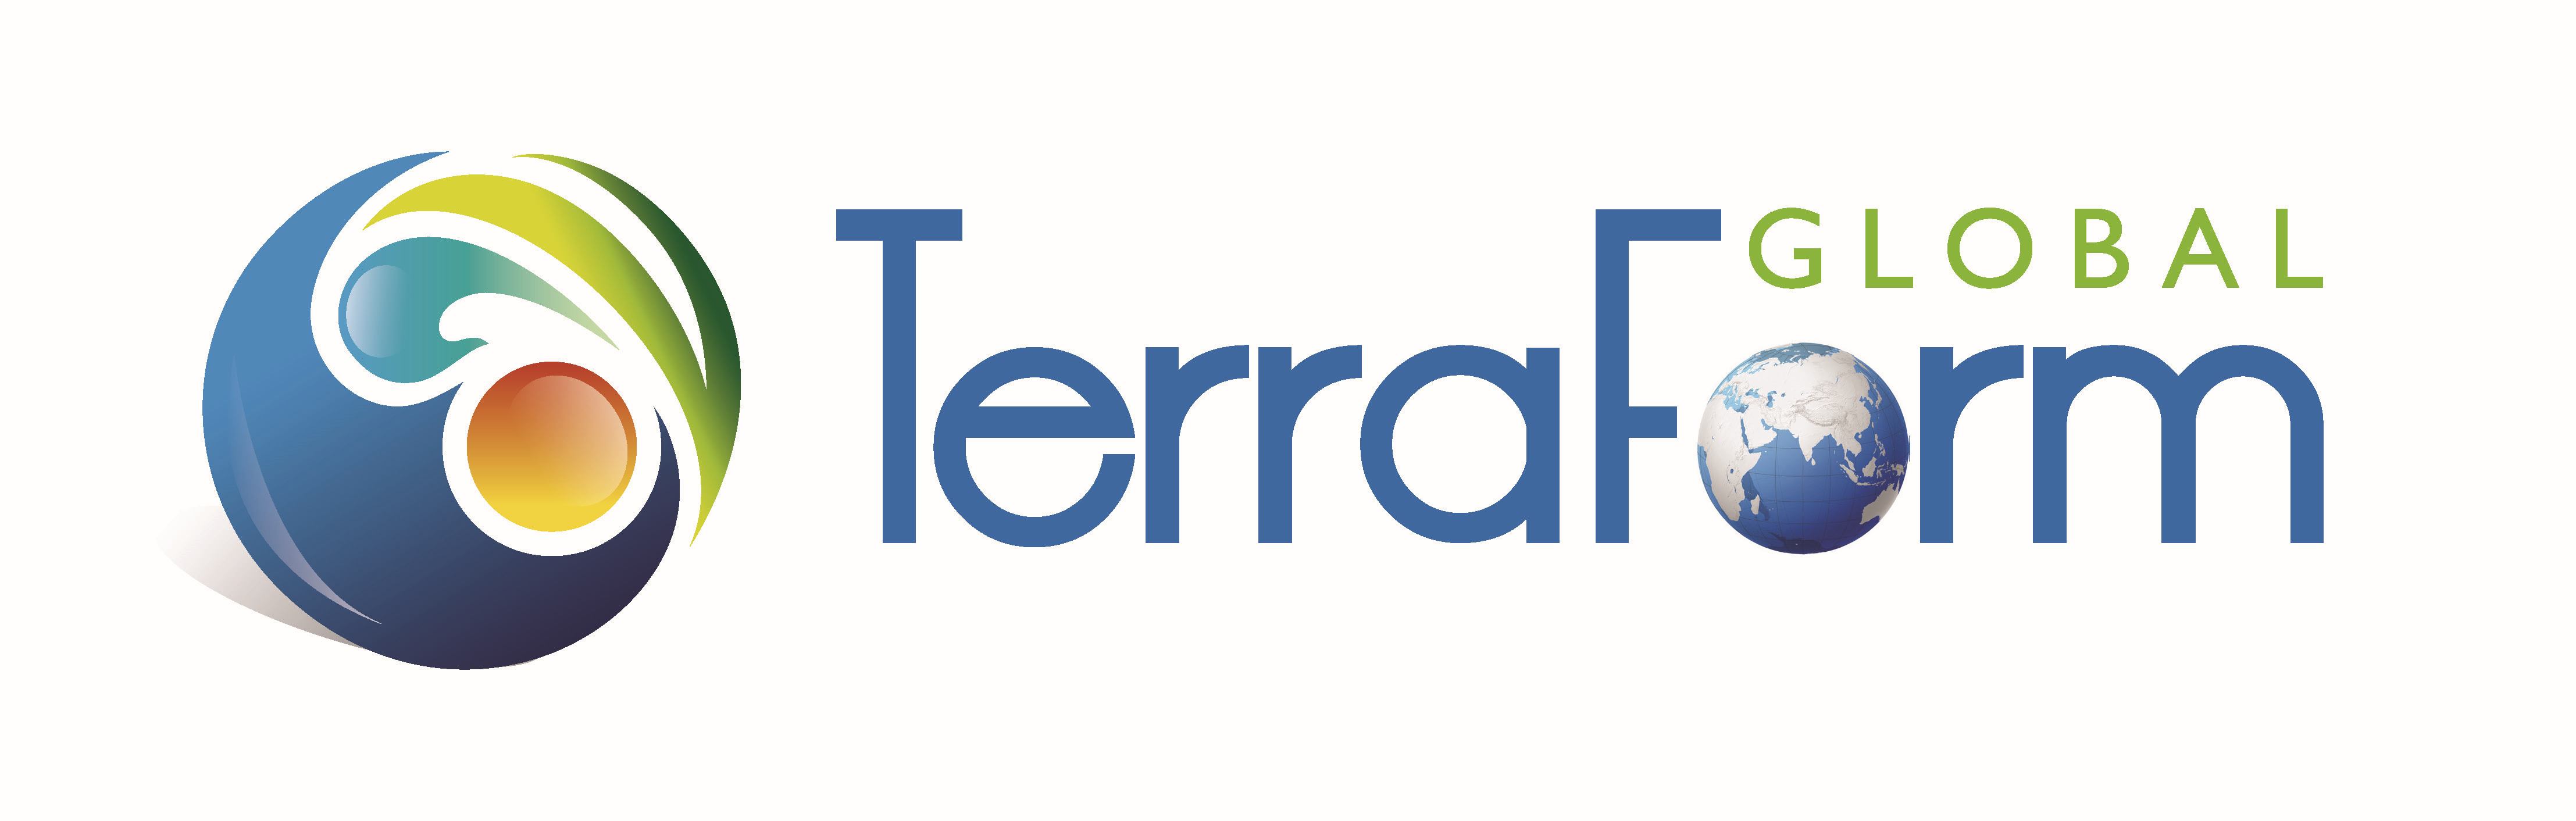 terraform logo.jpg